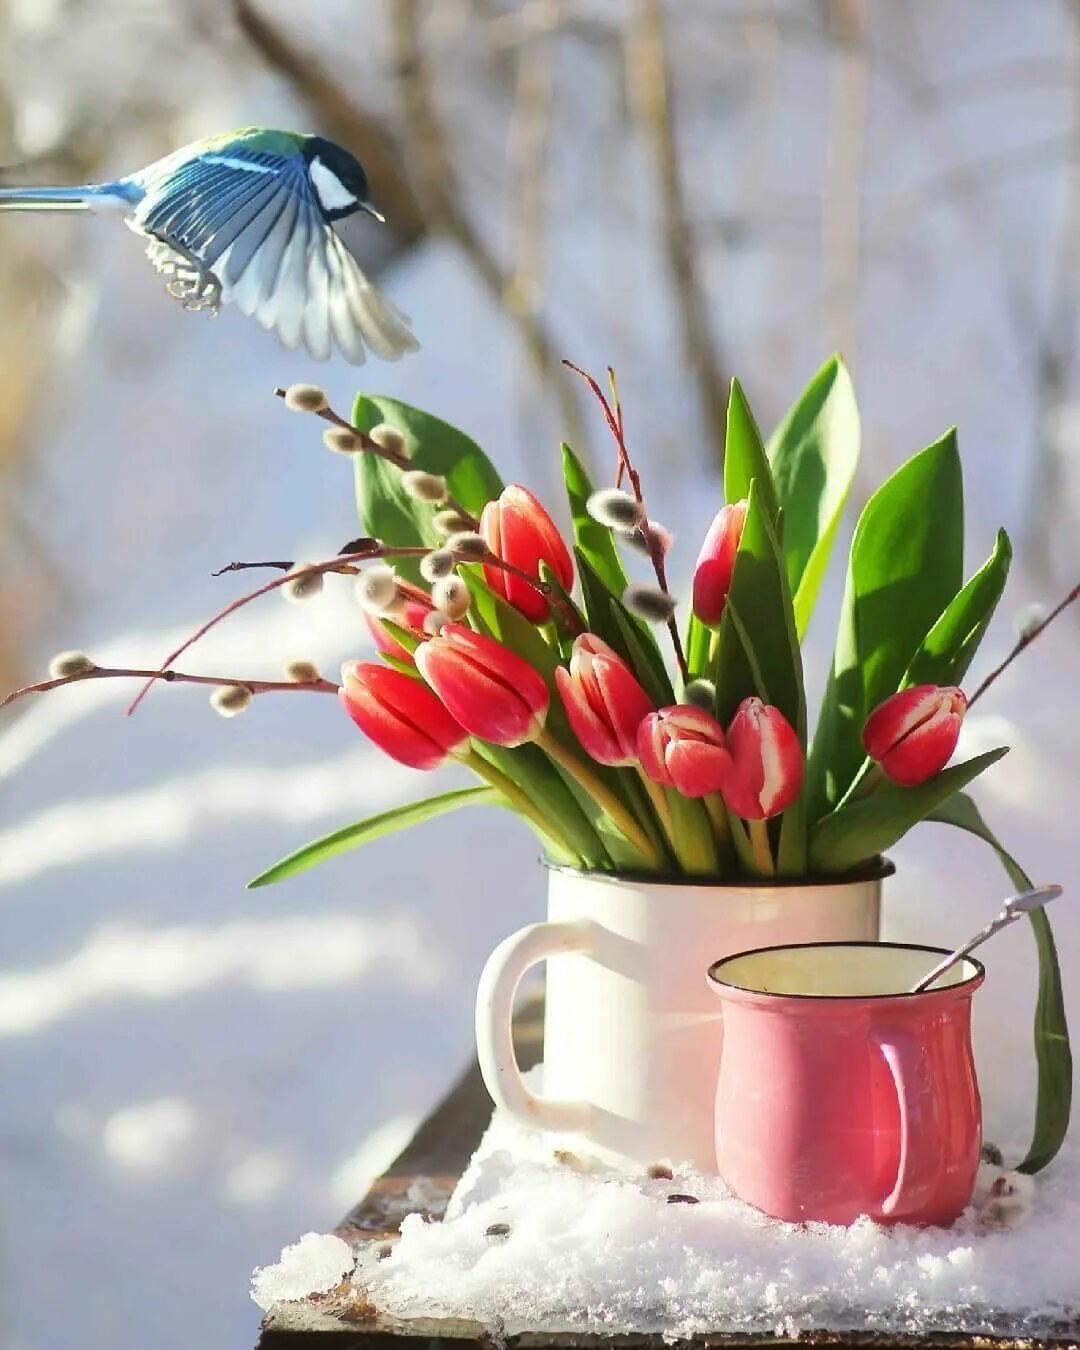 Пожелания доброго апрельского утра. Доброго весеннего дня. Весеннее настроение. Пожелания с добрым весенним утром.